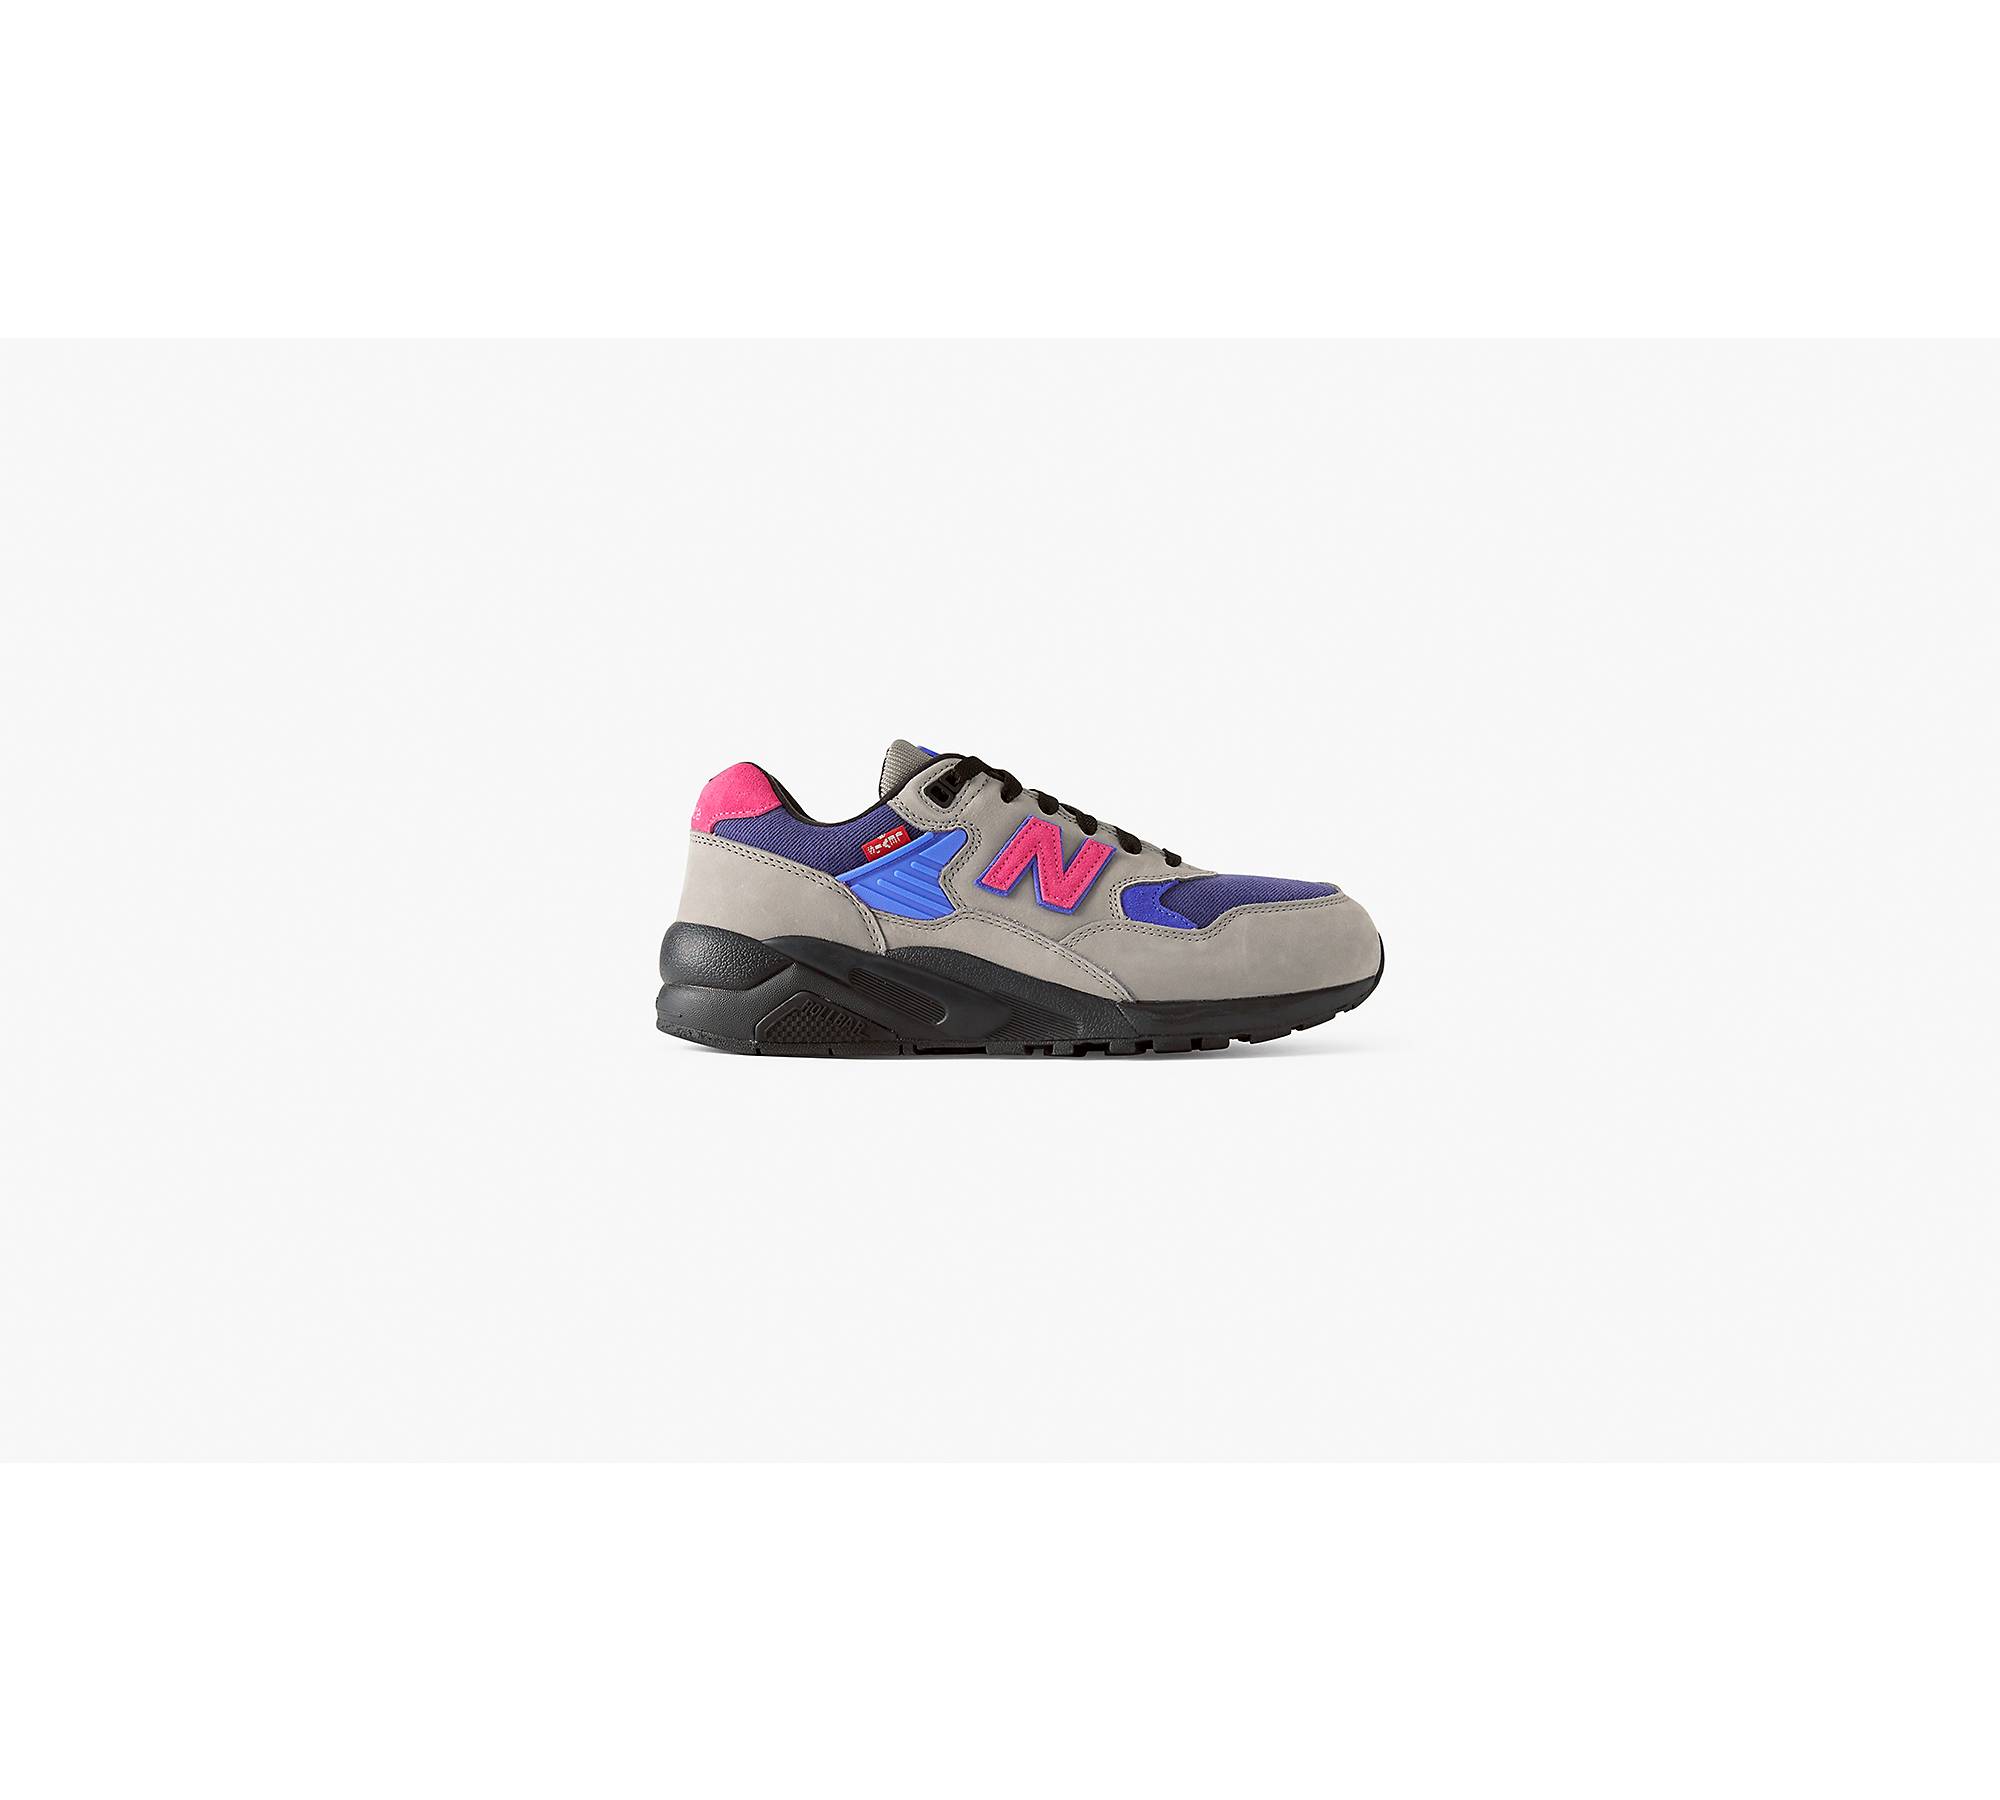 Levi's® X New Balance Mt580lv2 Sneakers - Multi Colour | Levi's® GB